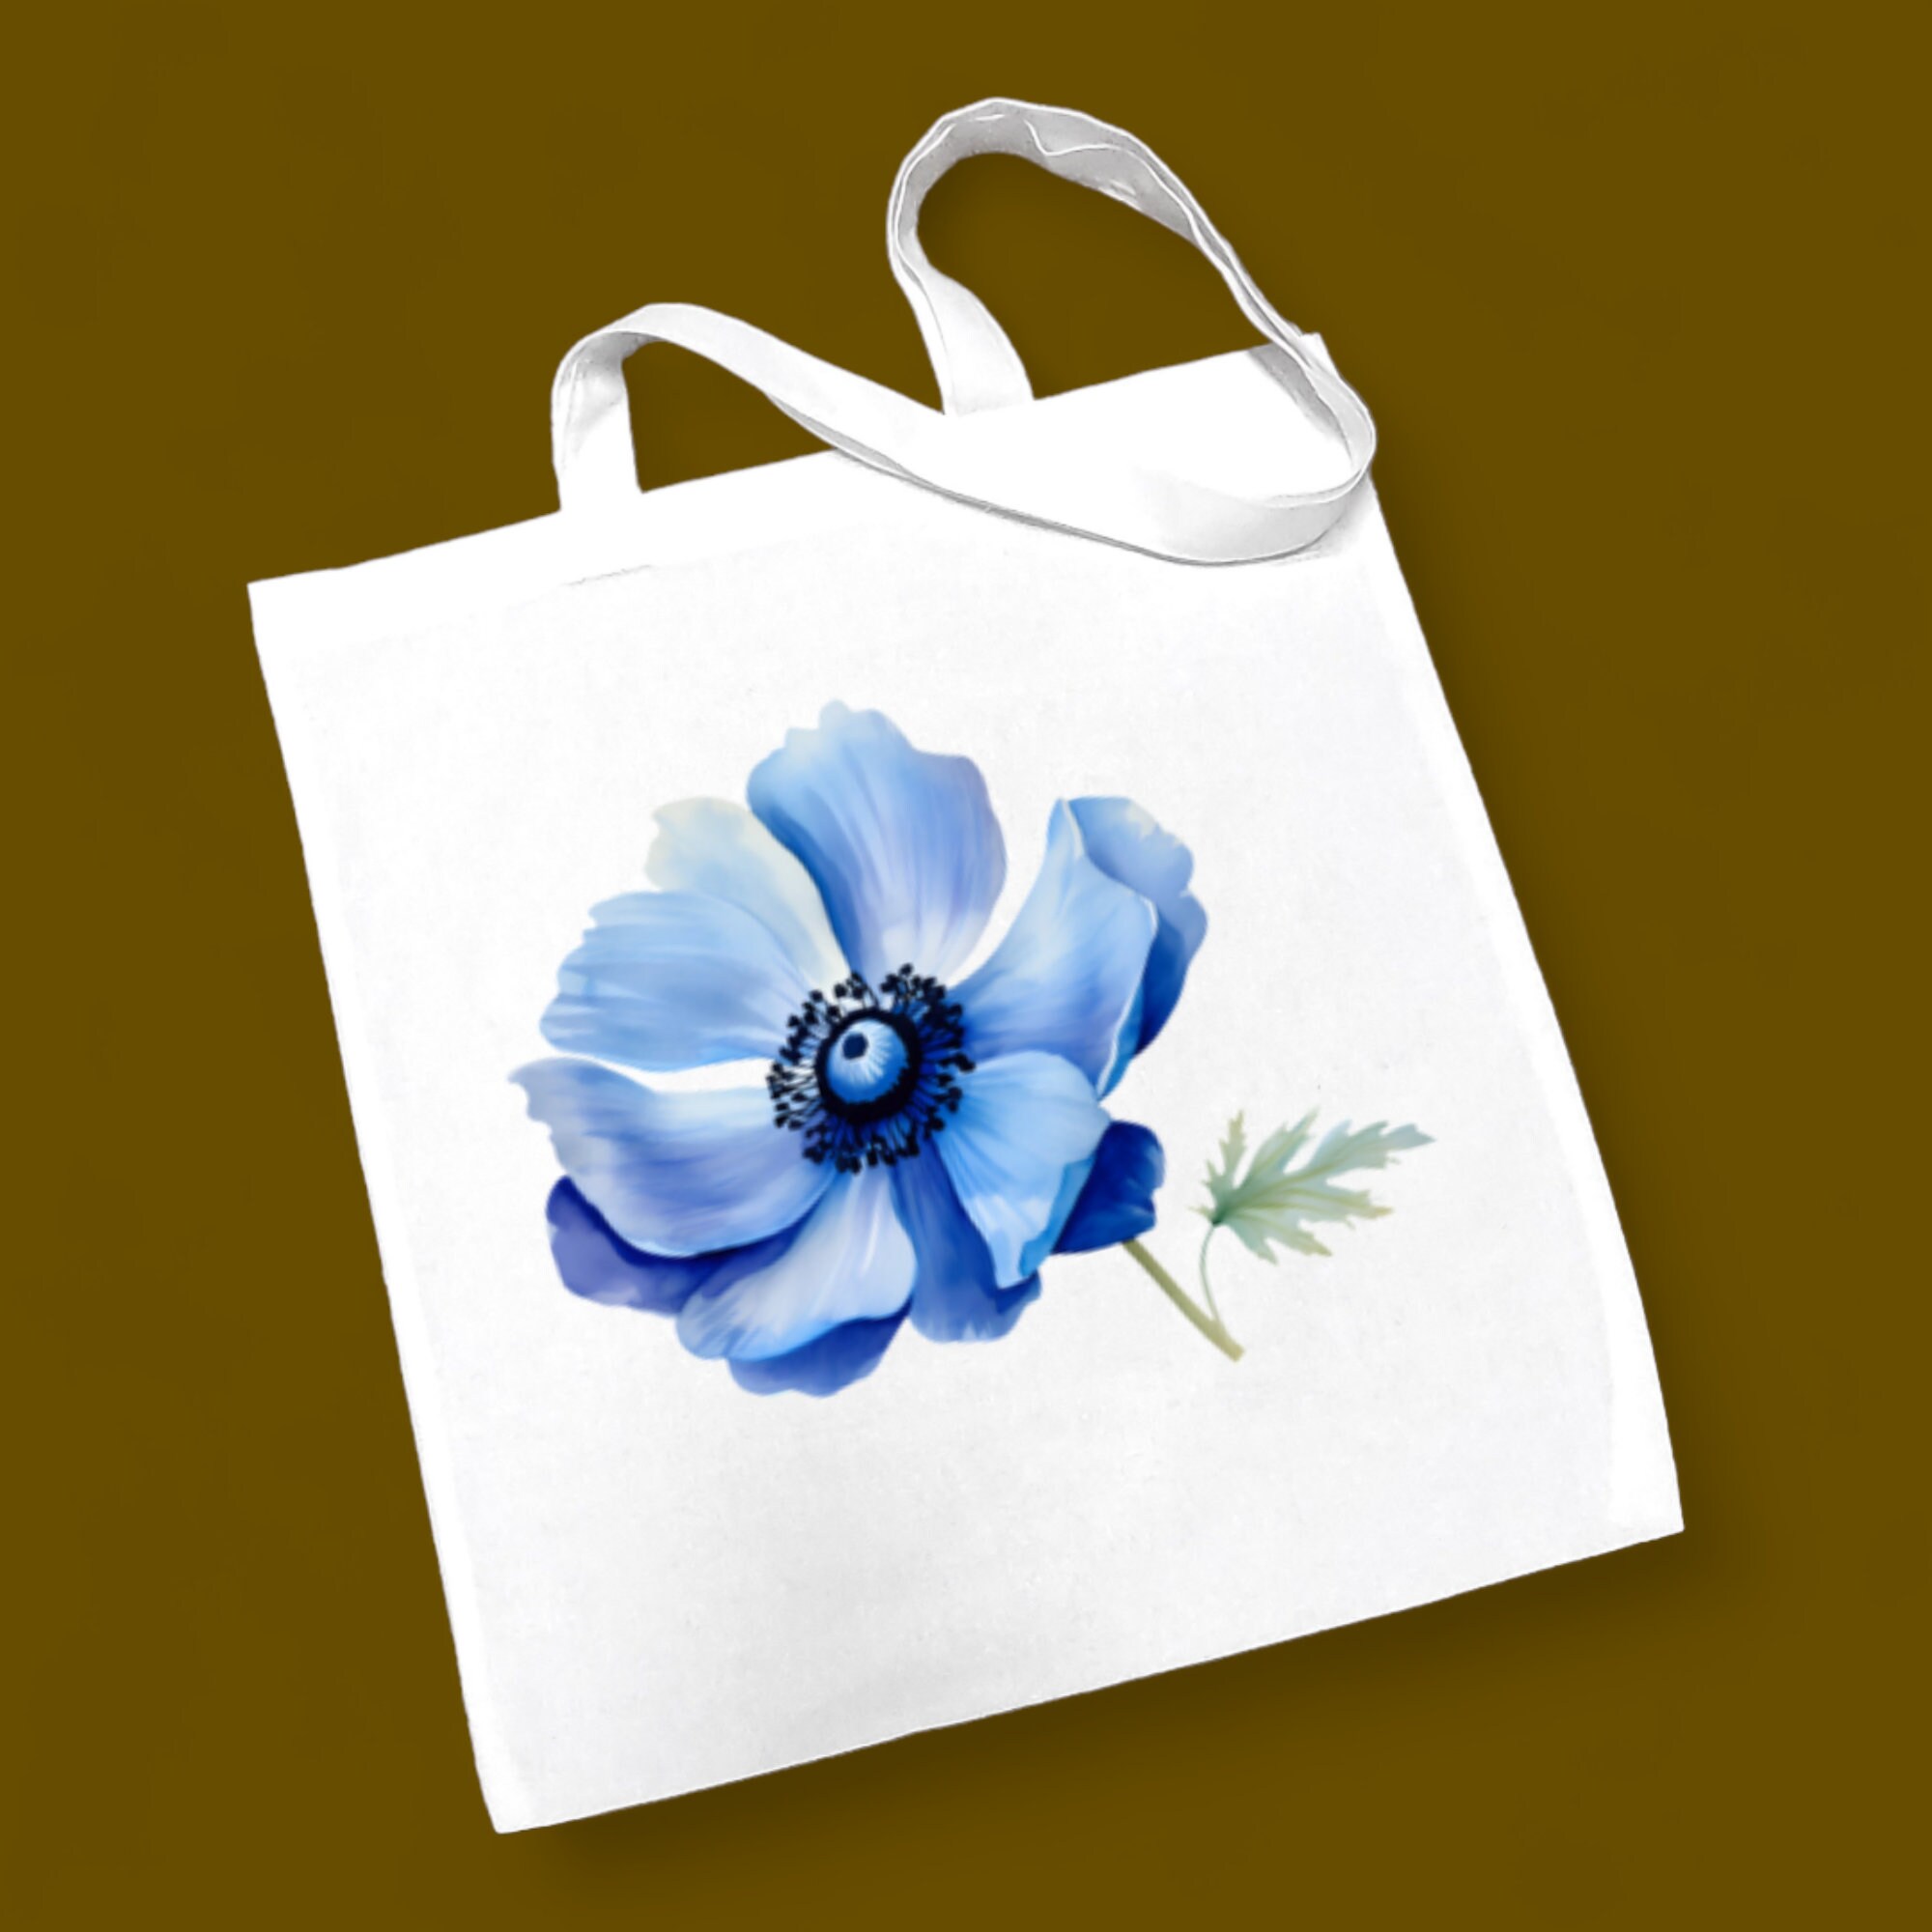 Stofftasche, Stoffbeutel, Einkaufstasche, Tasche, Geschenk zum Muttertag, Geburtstag, in Weiß oder Beige, "Anemone, Blüte, Blau"